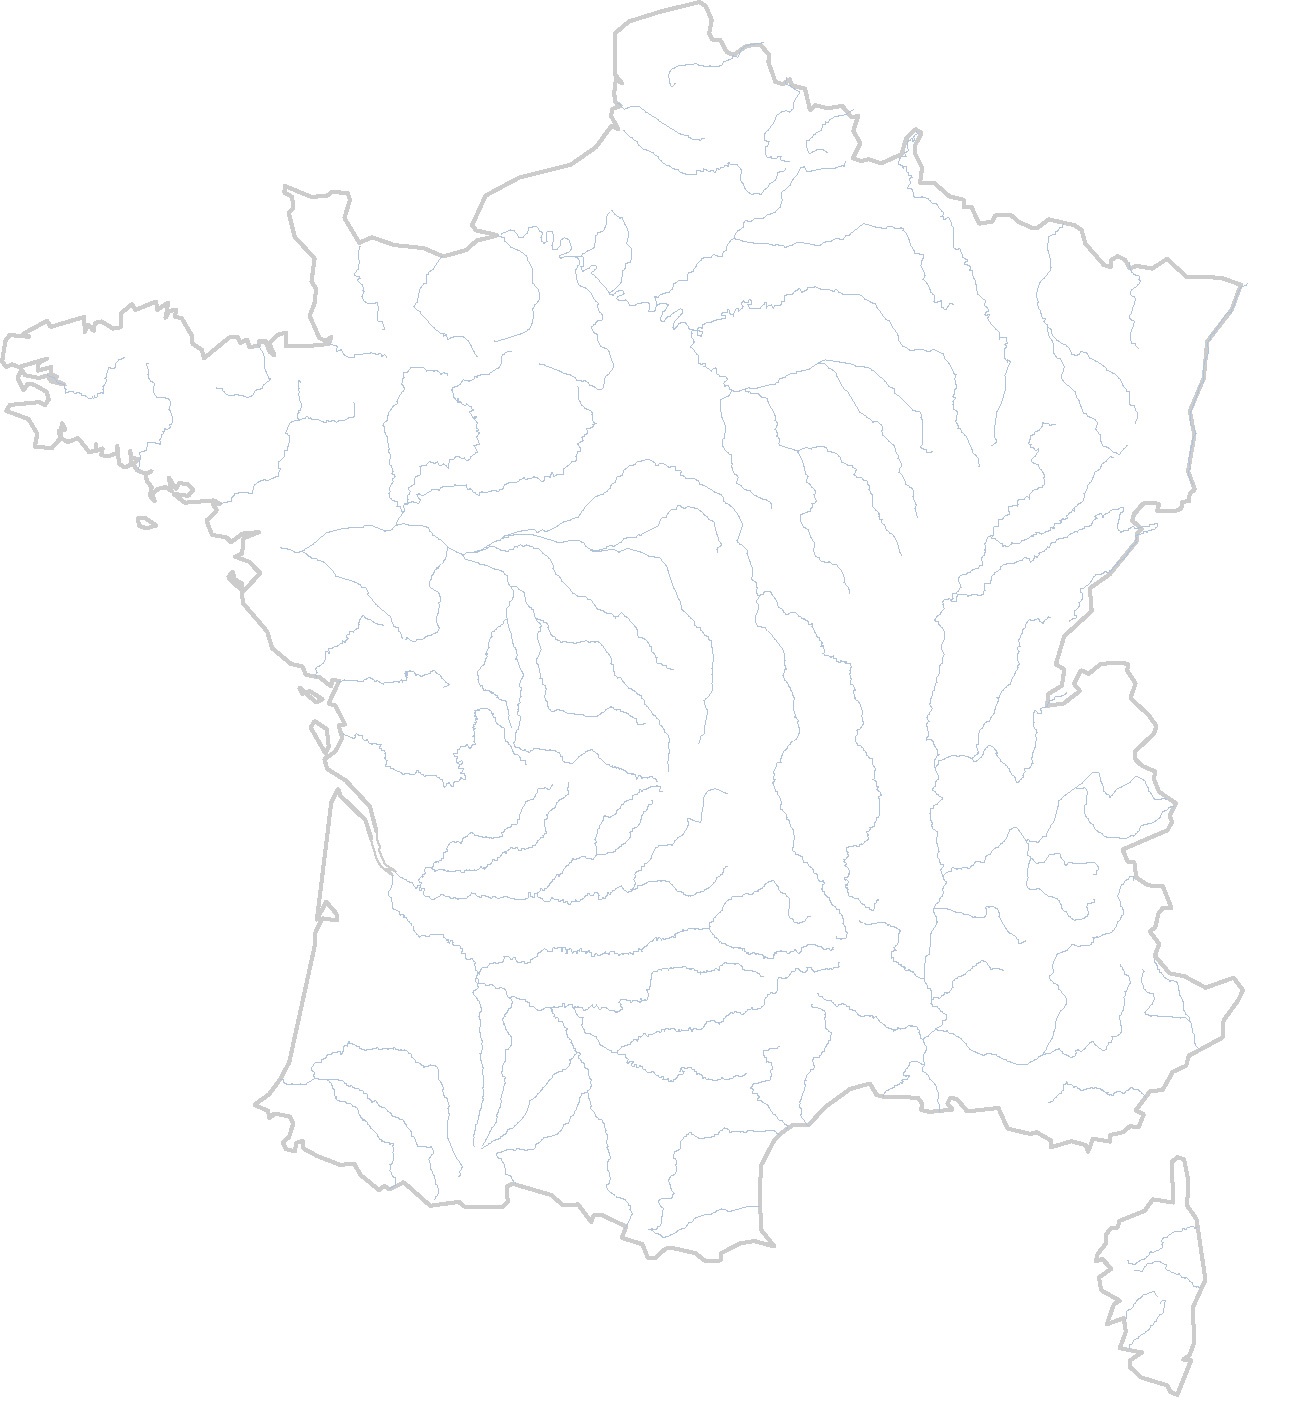 Cartes Vierges De La France A Imprimer Chroniques Cartographiques